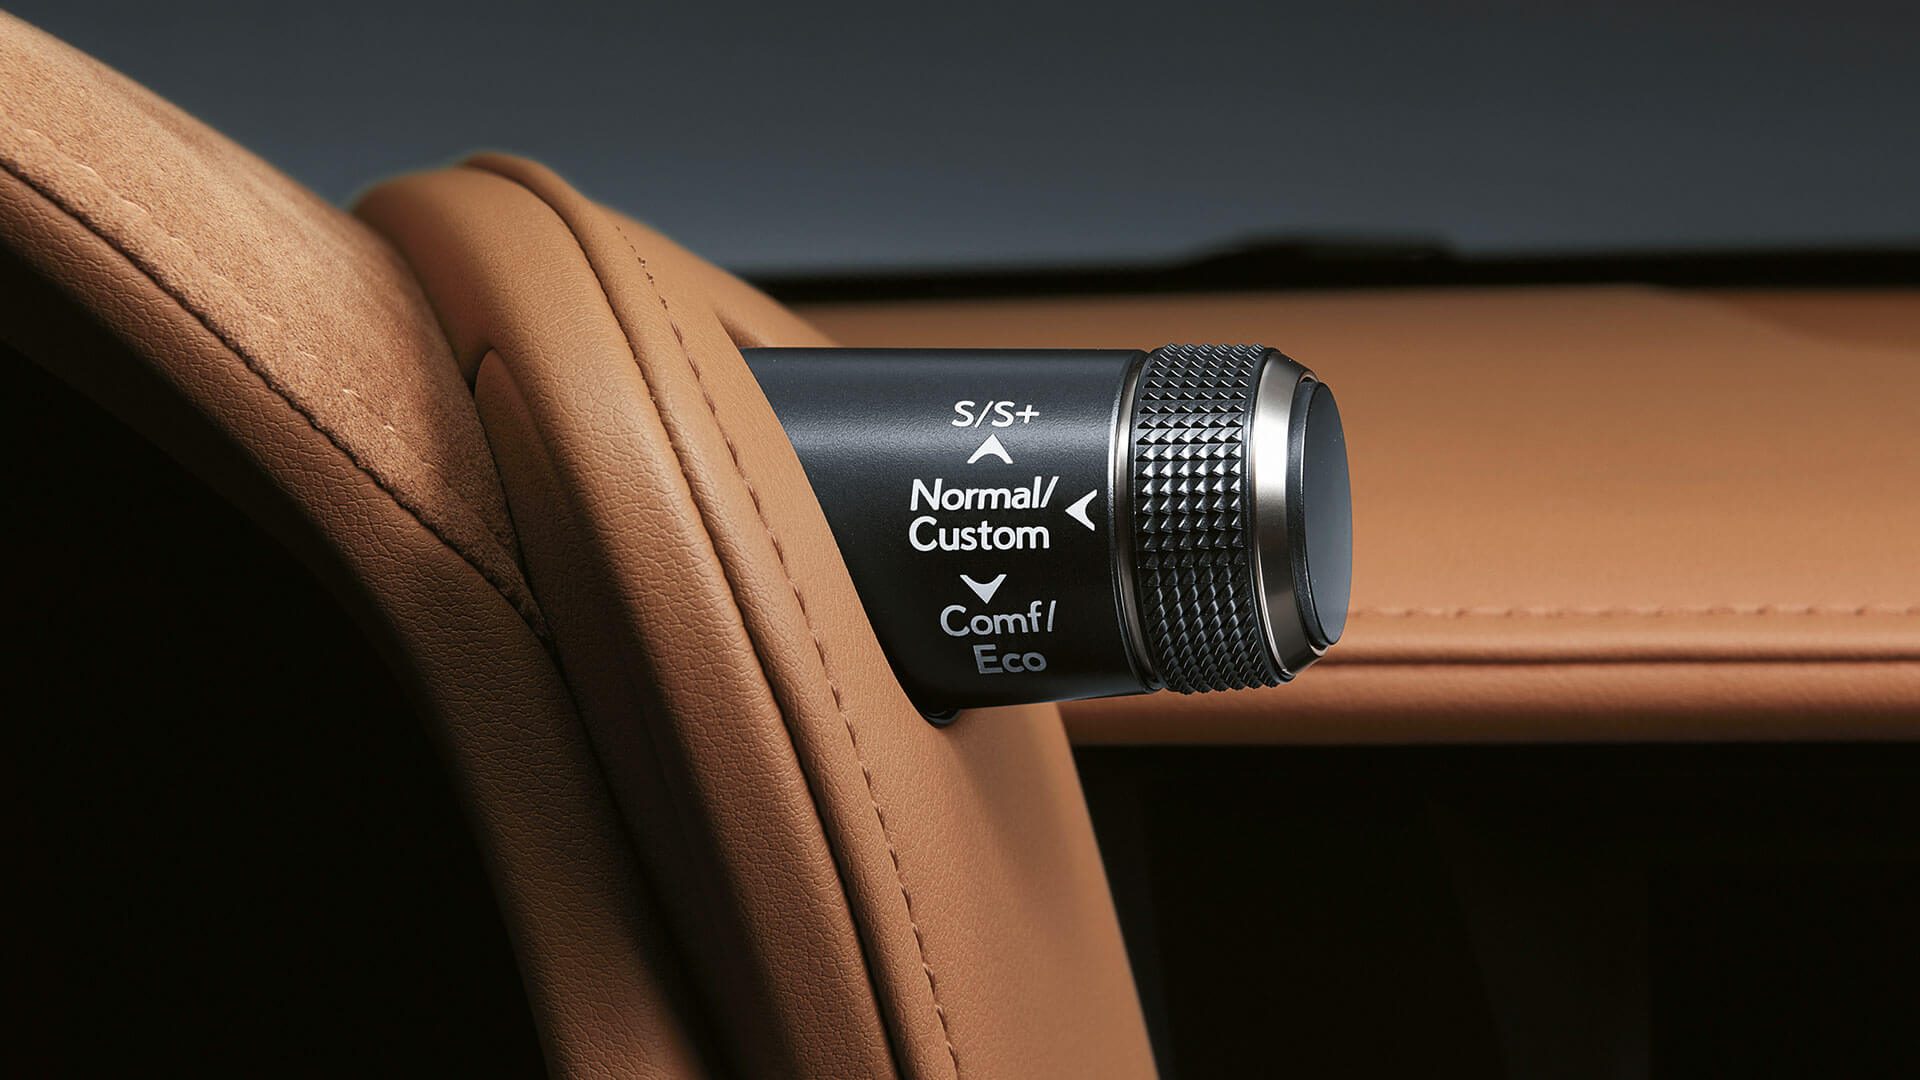 Lexus LC | Distinctive, sensational design | Louwman Exclusive